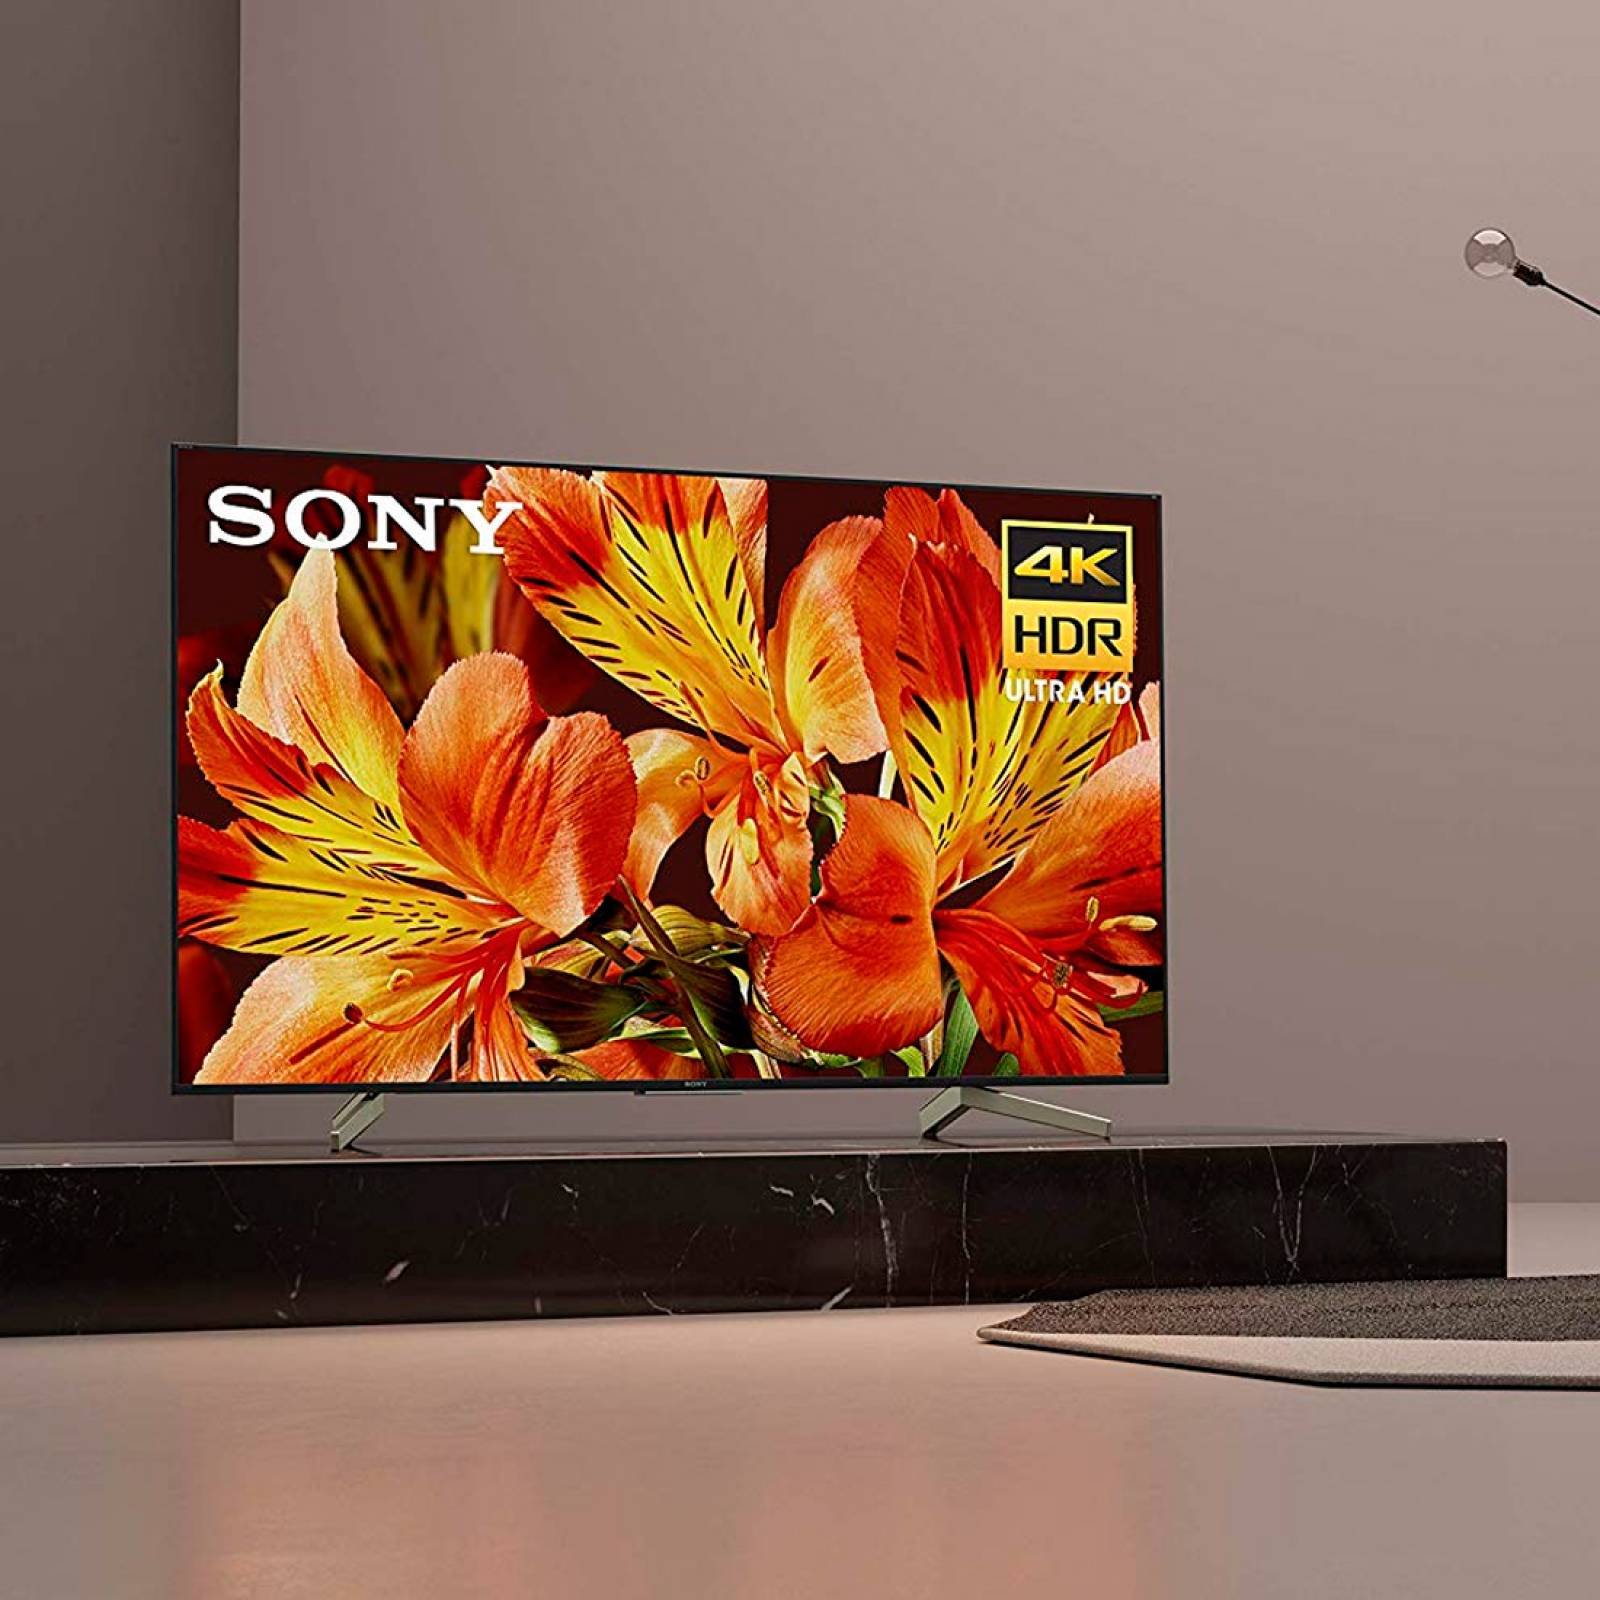 Smart TV 85 Pulg LED 4K HDR Procesador X1 XBR-85X850G Sony